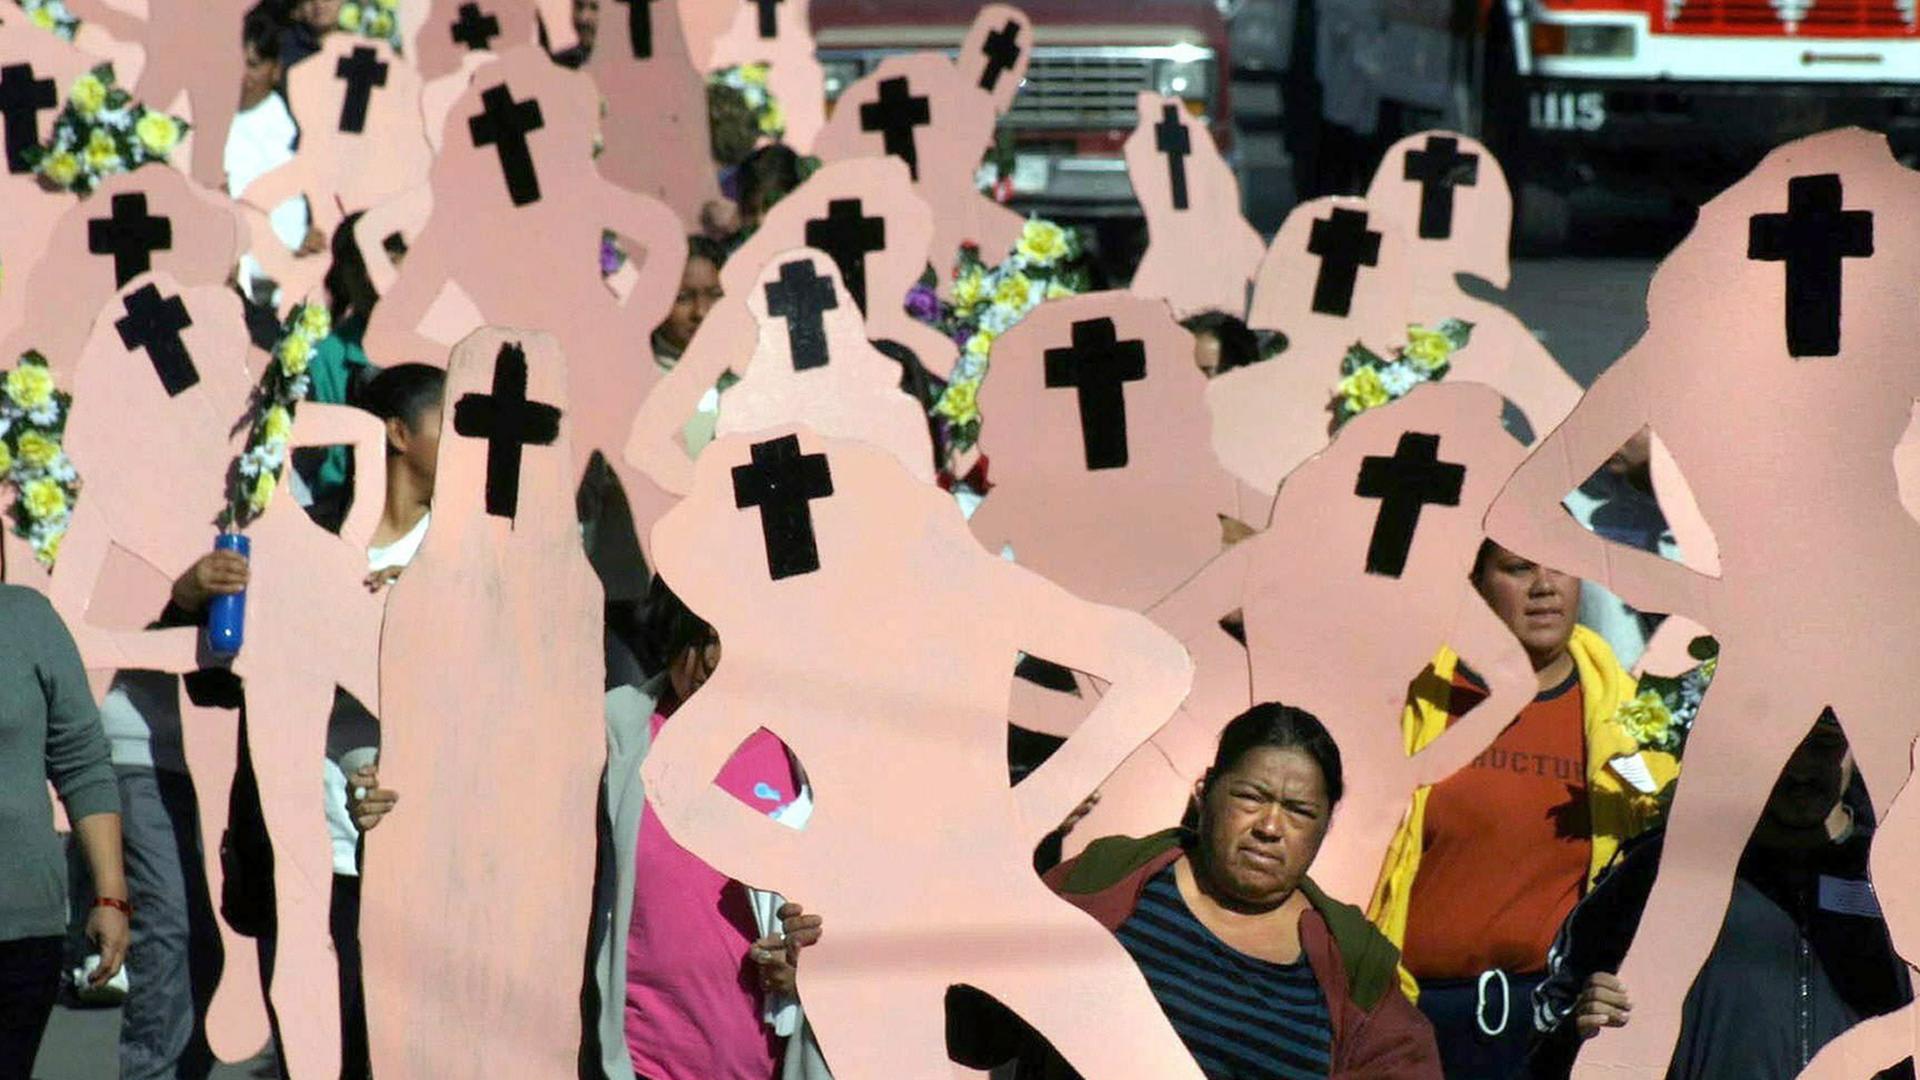 Angehörige demonstrieren am 25.11.2003 mit Pappfiguren als Symbole für die getöteten Frauen in Ciudad Juarez. Die mexikanische Grenzstadt Ciudad Juárez erlangte international Berühmtheit - zwischen 993 und 2007 wurden hier 393 Frauen ermordet. "Welthauptstadt der Frauenmorde" ist deshalb das Image, das der Stadt weltweit anhängt.